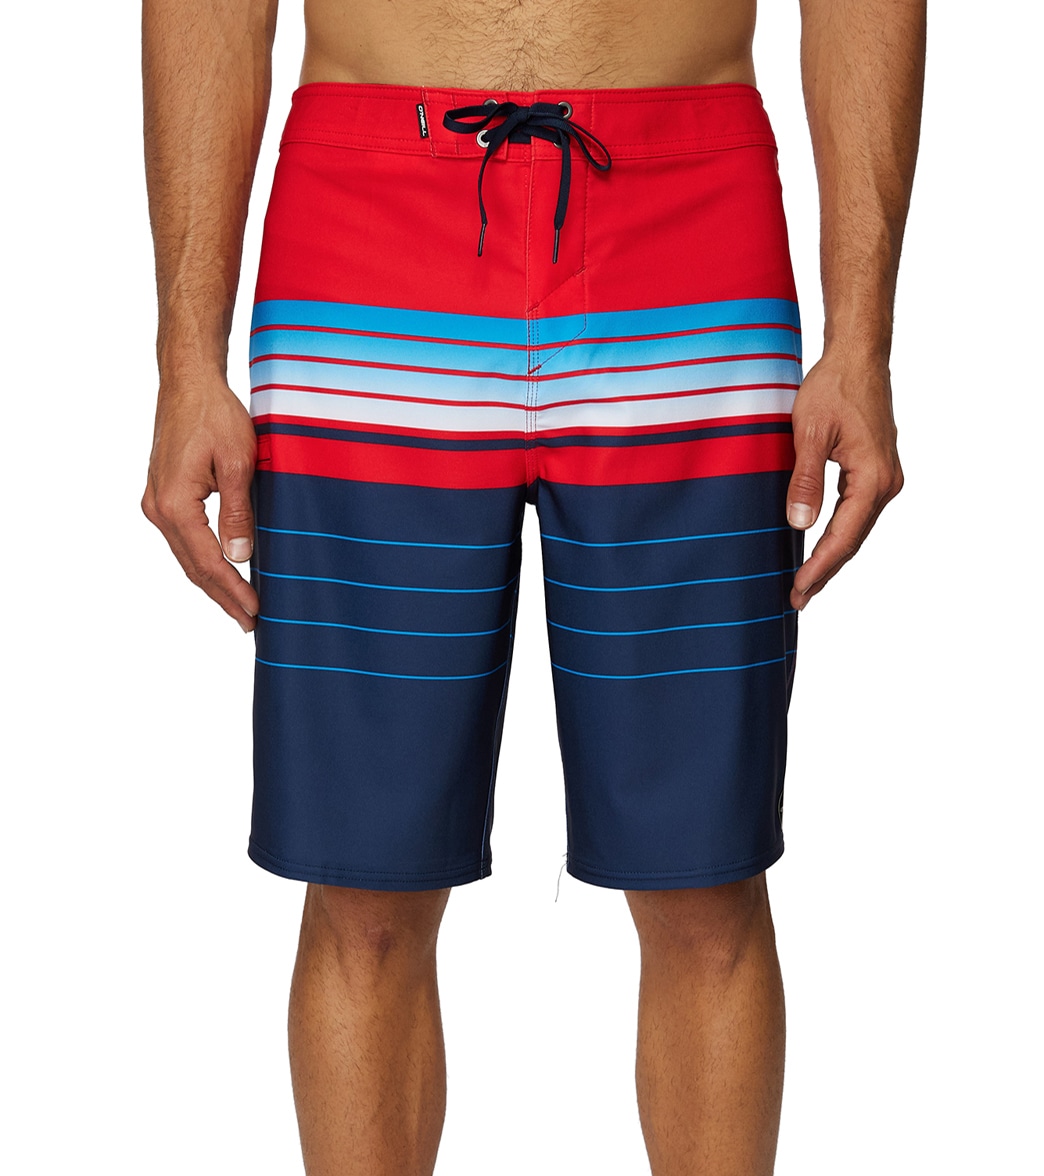 O'neill Men's Hyperfreak Heist Boardshorts - Red White Blue 34 - Swimoutlet.com